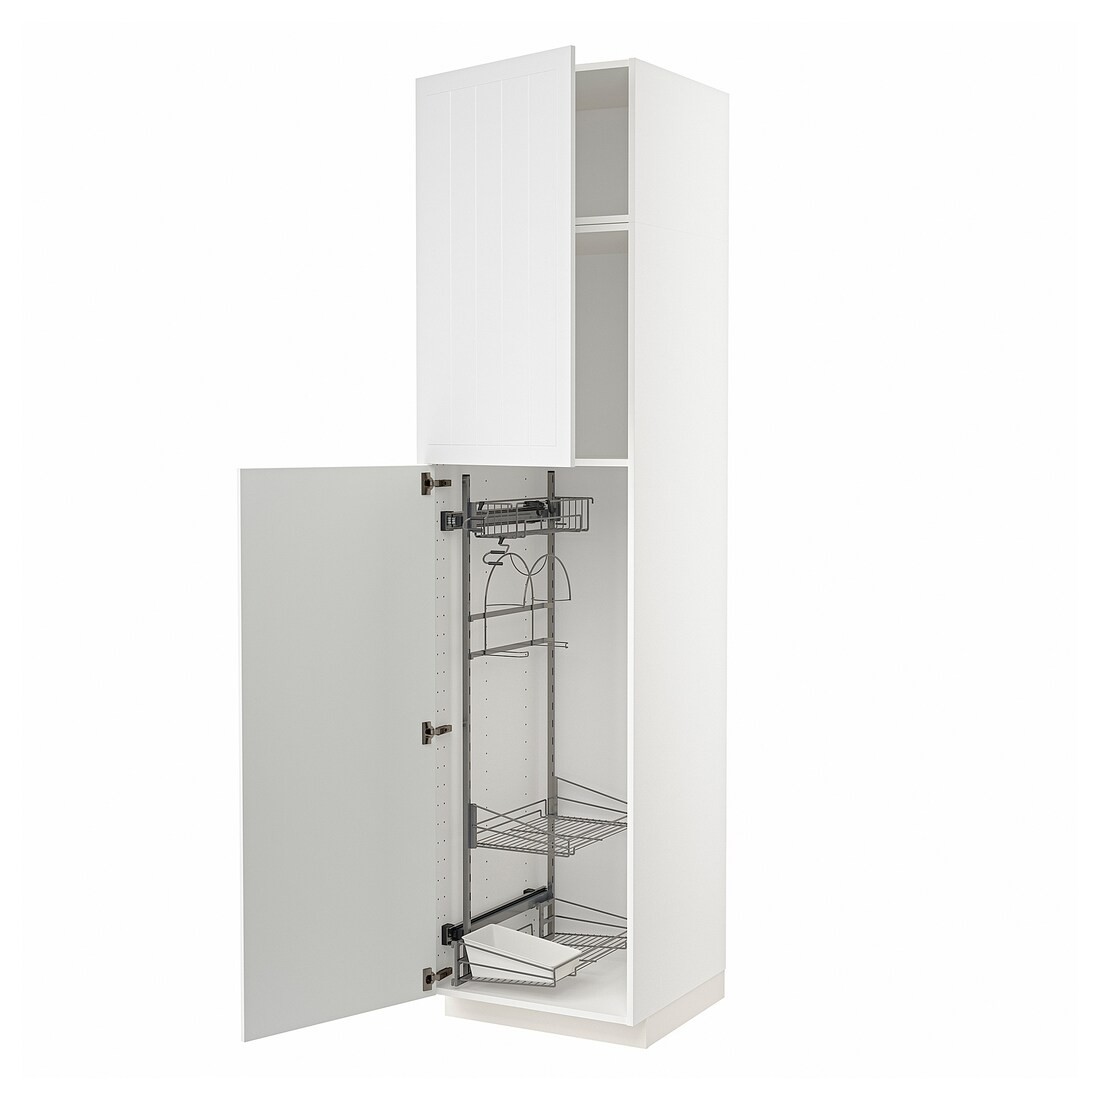 METOD МЕТОД Висока шафа з відділенням для аксесуарів для прибирання, білий / Stensund білий, 60x60x240 см